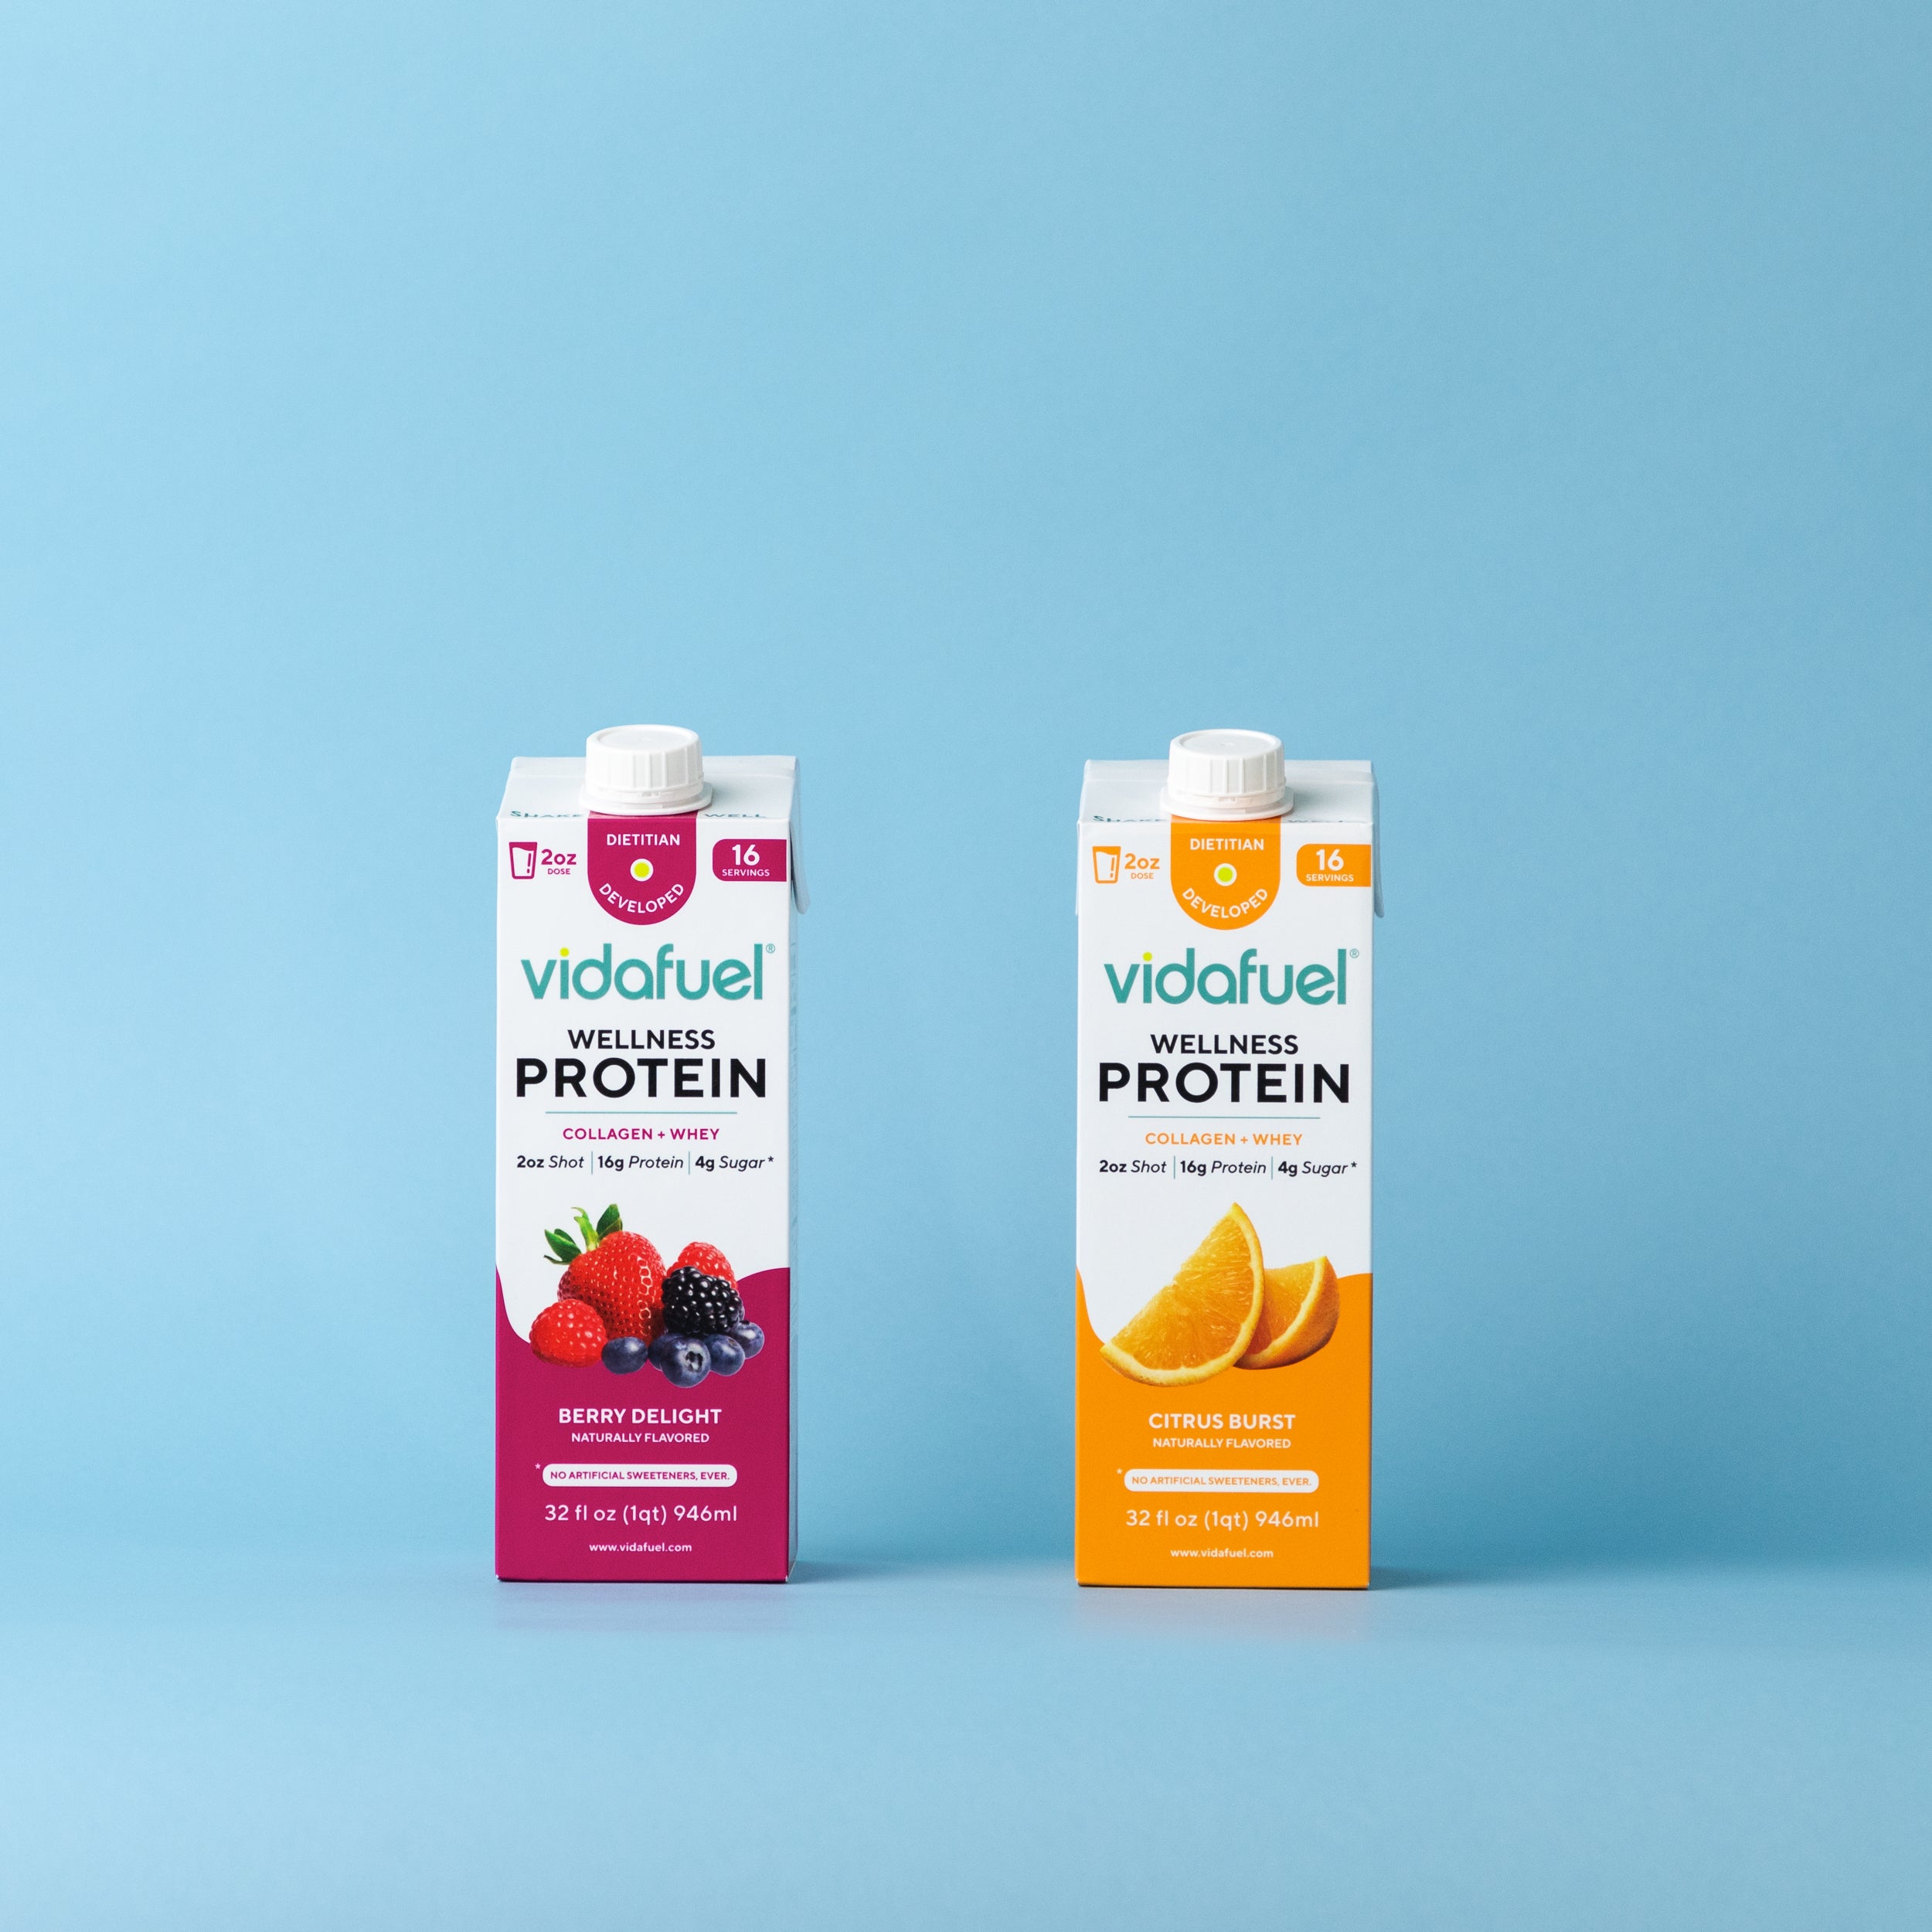 FUEL Yogurt / Granola container